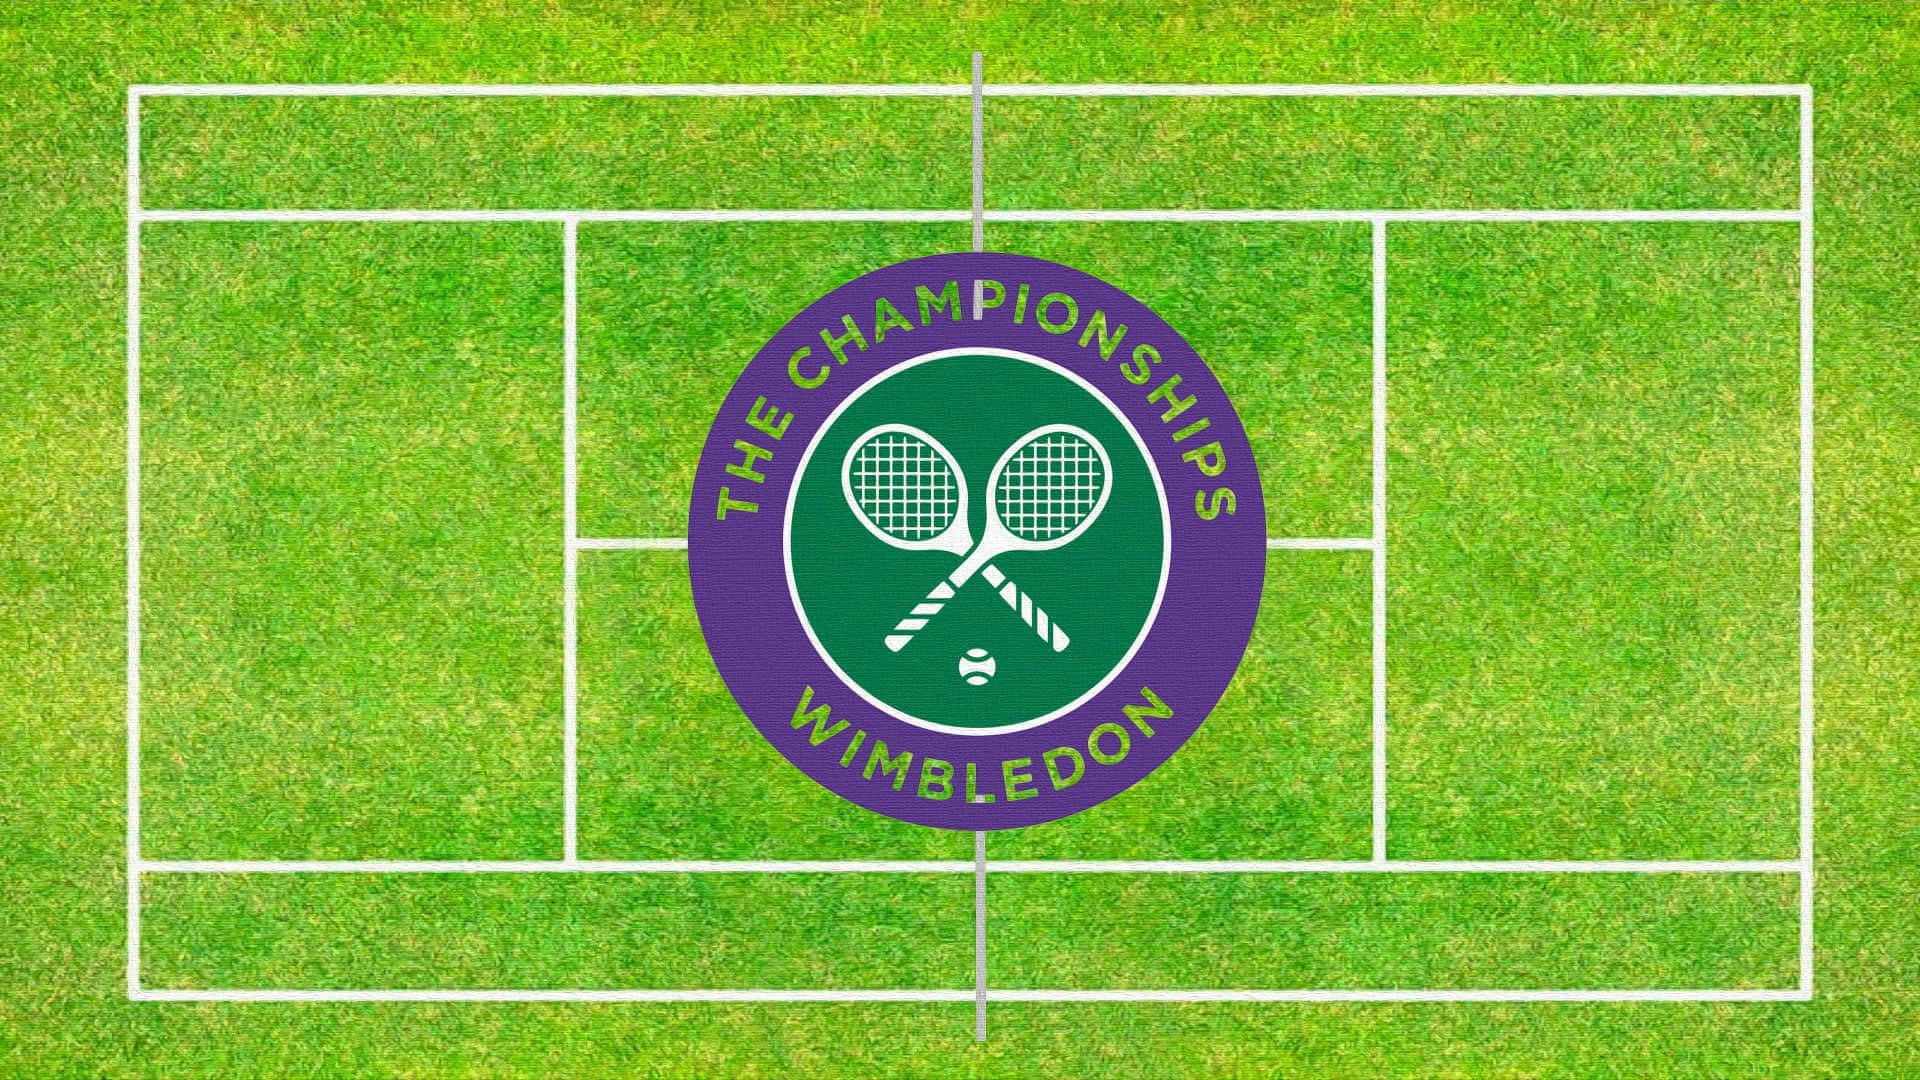 Wimbledontennis-logo Auf Gras